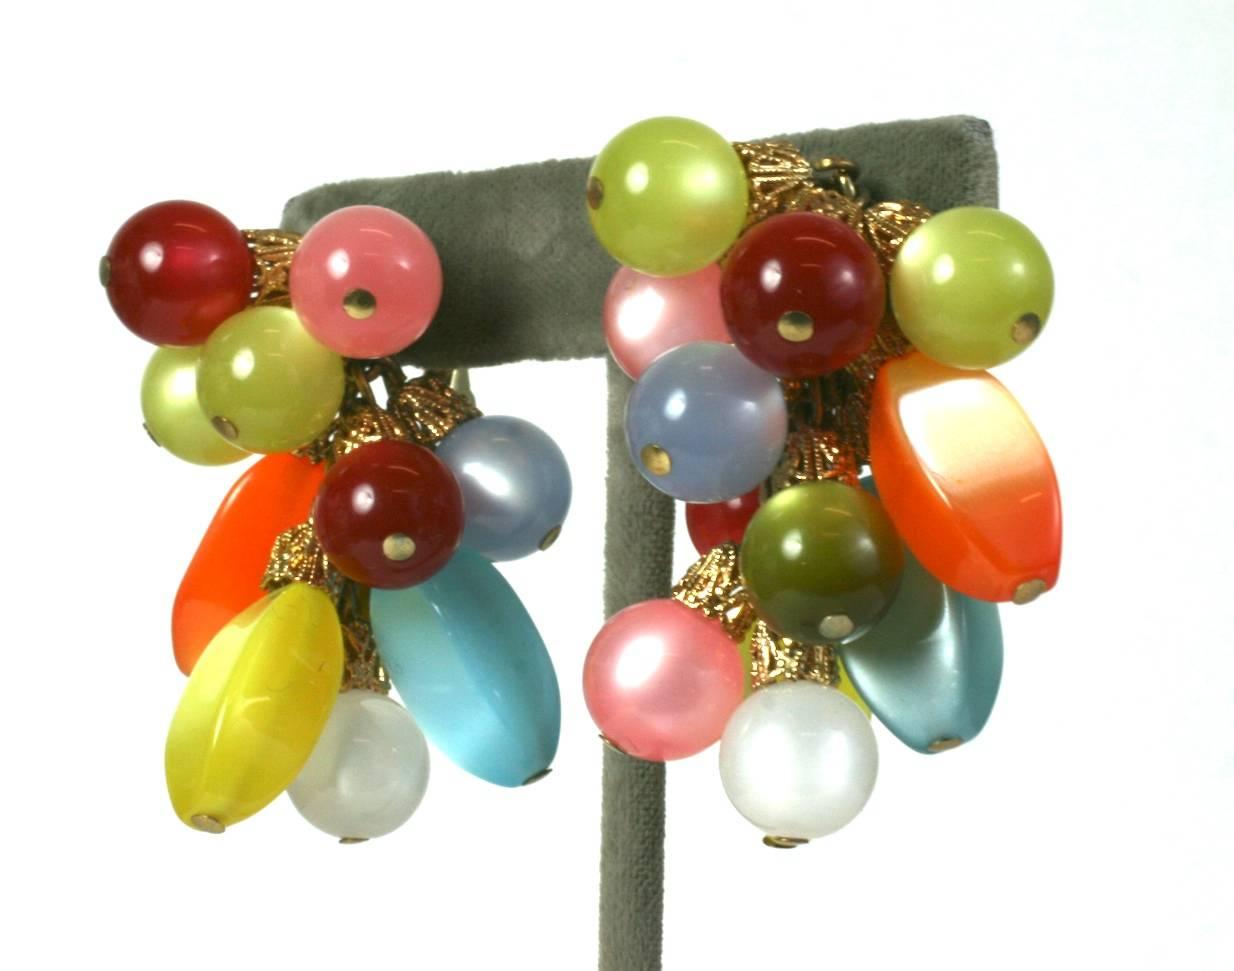 Napier Moon Glow Berry Cluster Ohrclips aus den 1960er Jahren. Bunte Perlen aus gesponnenem Nylon geben eine besondere Reflexion ab, ähnlich wie Katzenaugensteine. Clip-Back-Armaturen.
Lustige und auffallende Pastelltöne, mit vergoldeten filigranen